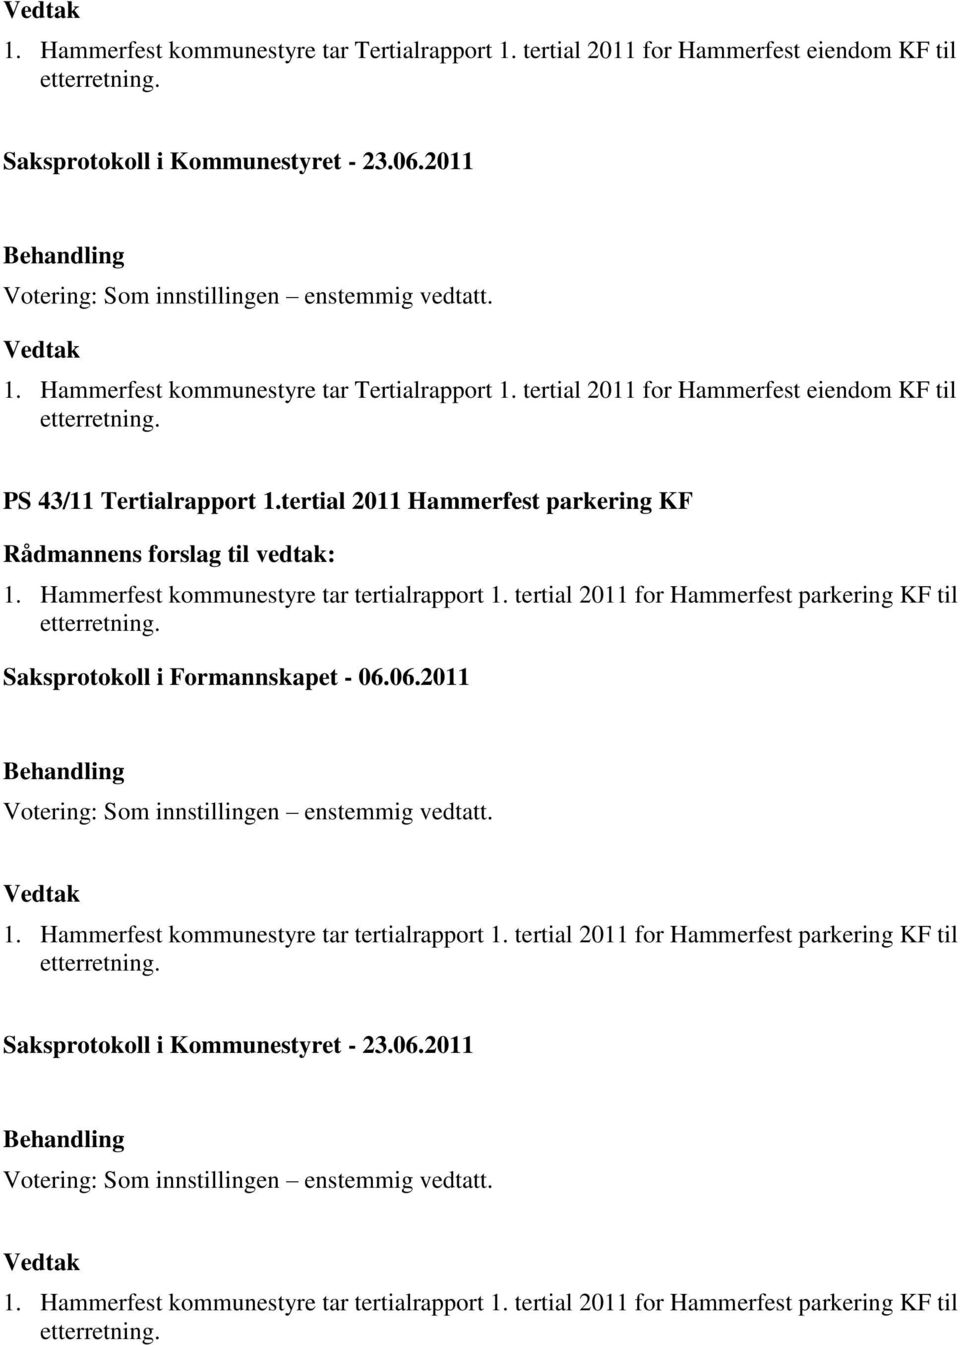 Saksprotokoll i Formannskapet - 06.06.2011 1. Hammerfest kommunestyre tar tertialrapport 1. tertial 2011 for Hammerfest parkering KF til etterretning.